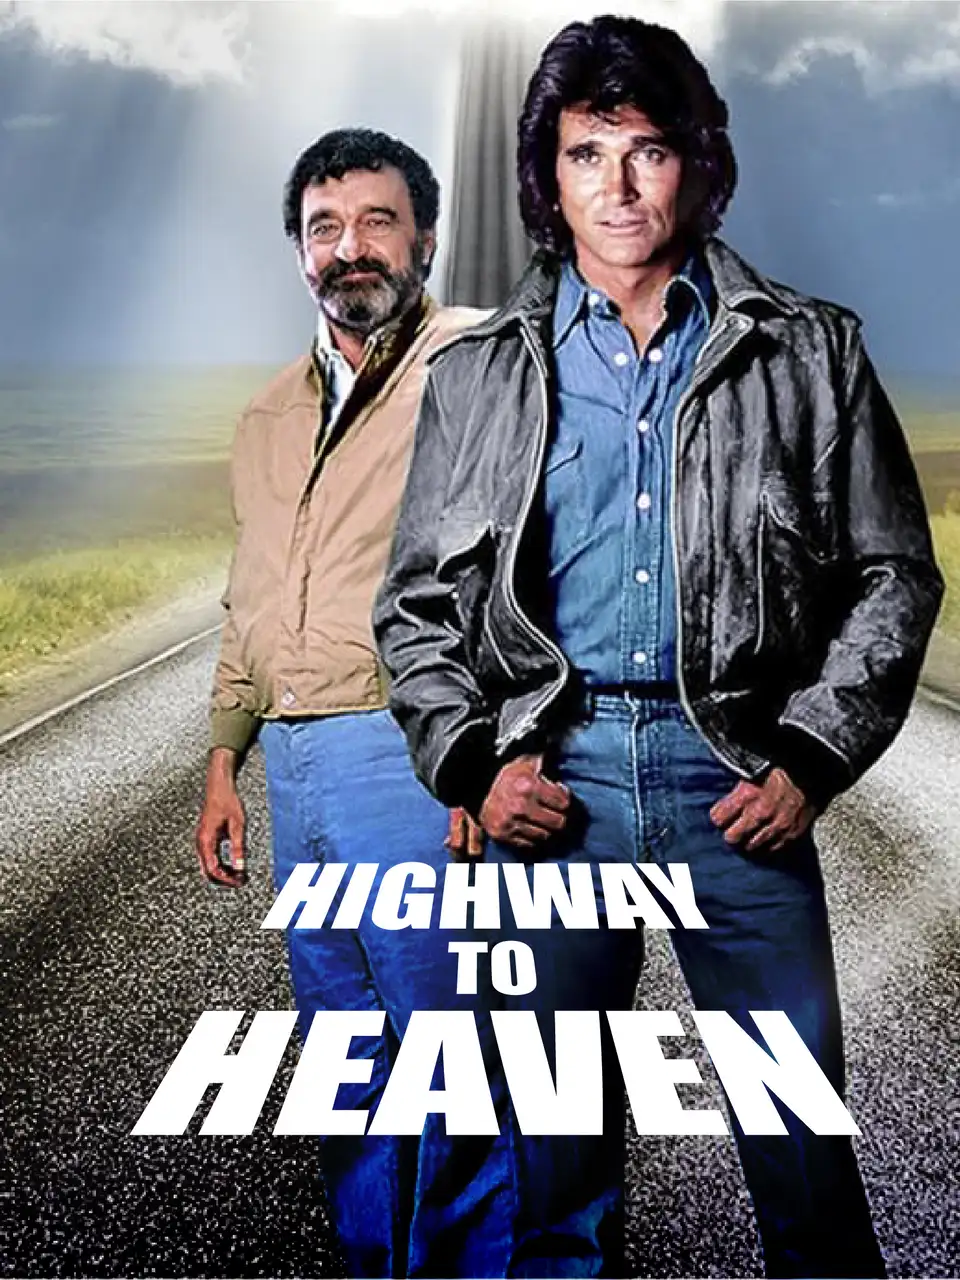 Highway to Heaven - BYUtv